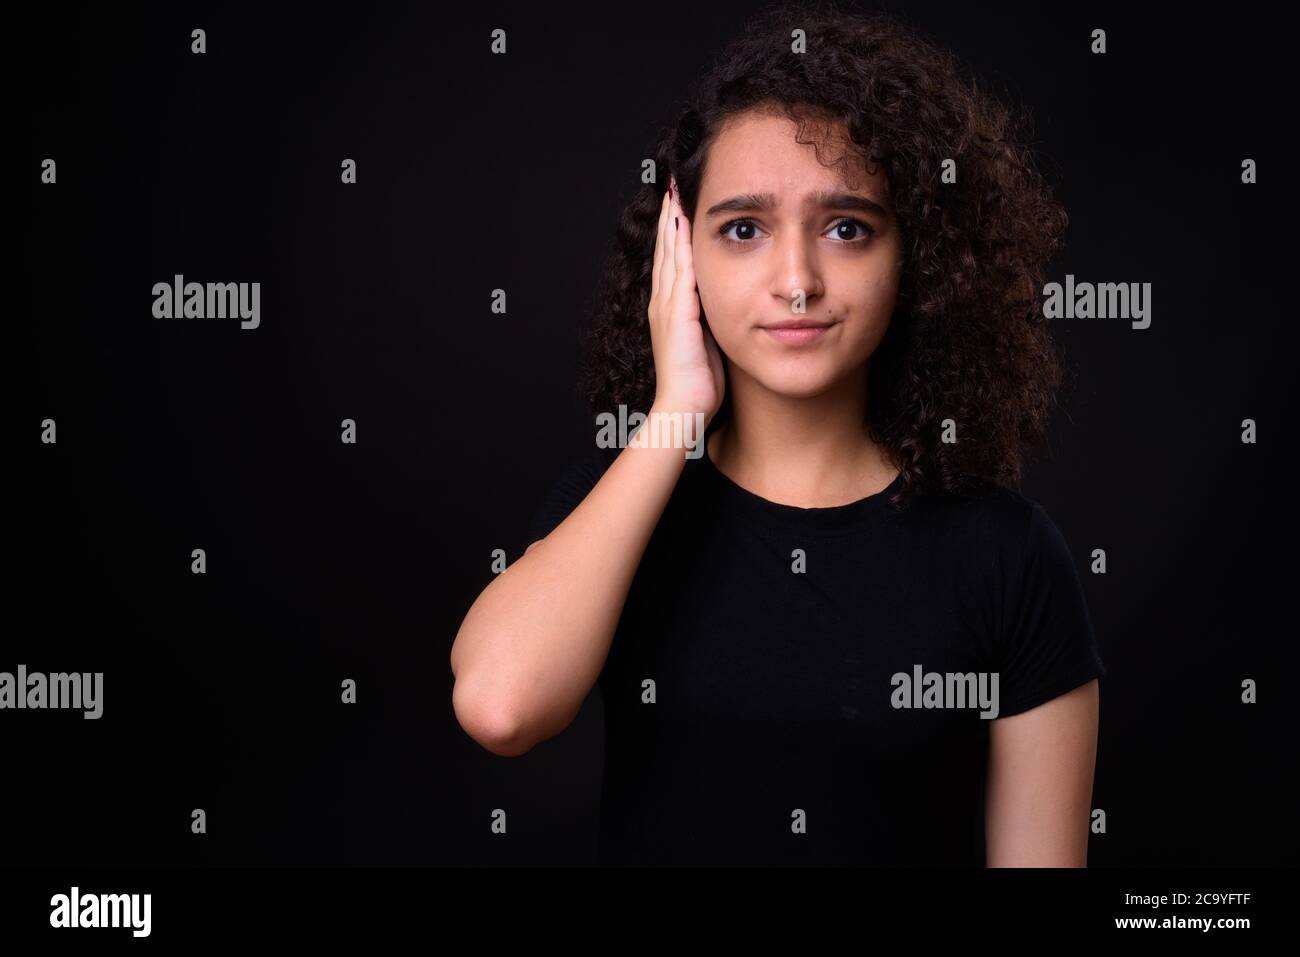 Portrait de la jeune belle jeune fille persane adolescente avec des cheveux bouclés Banque D'Images